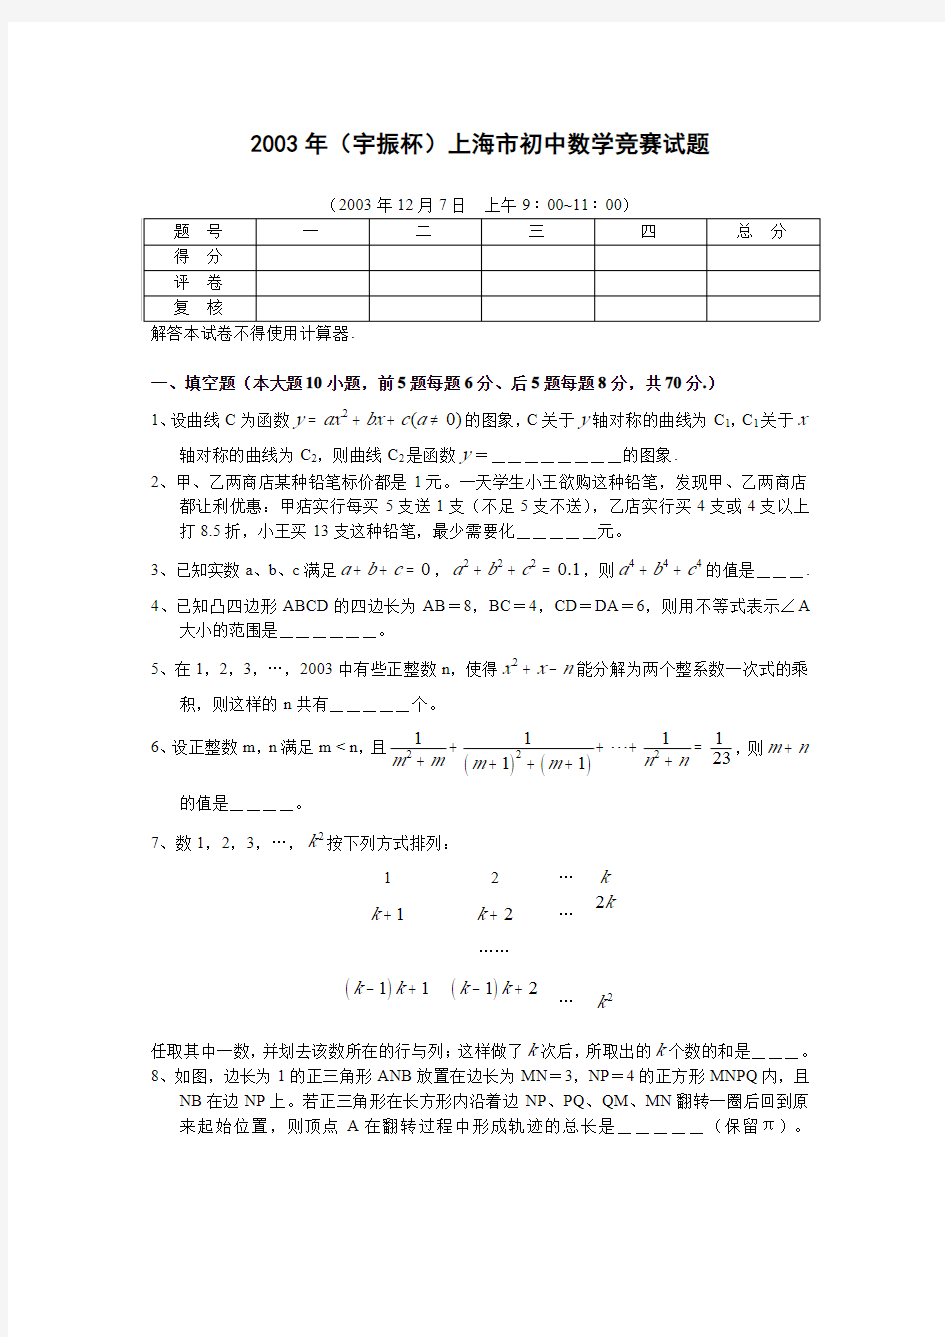 2003上海大同杯(原宇振杯)数学竞赛试题